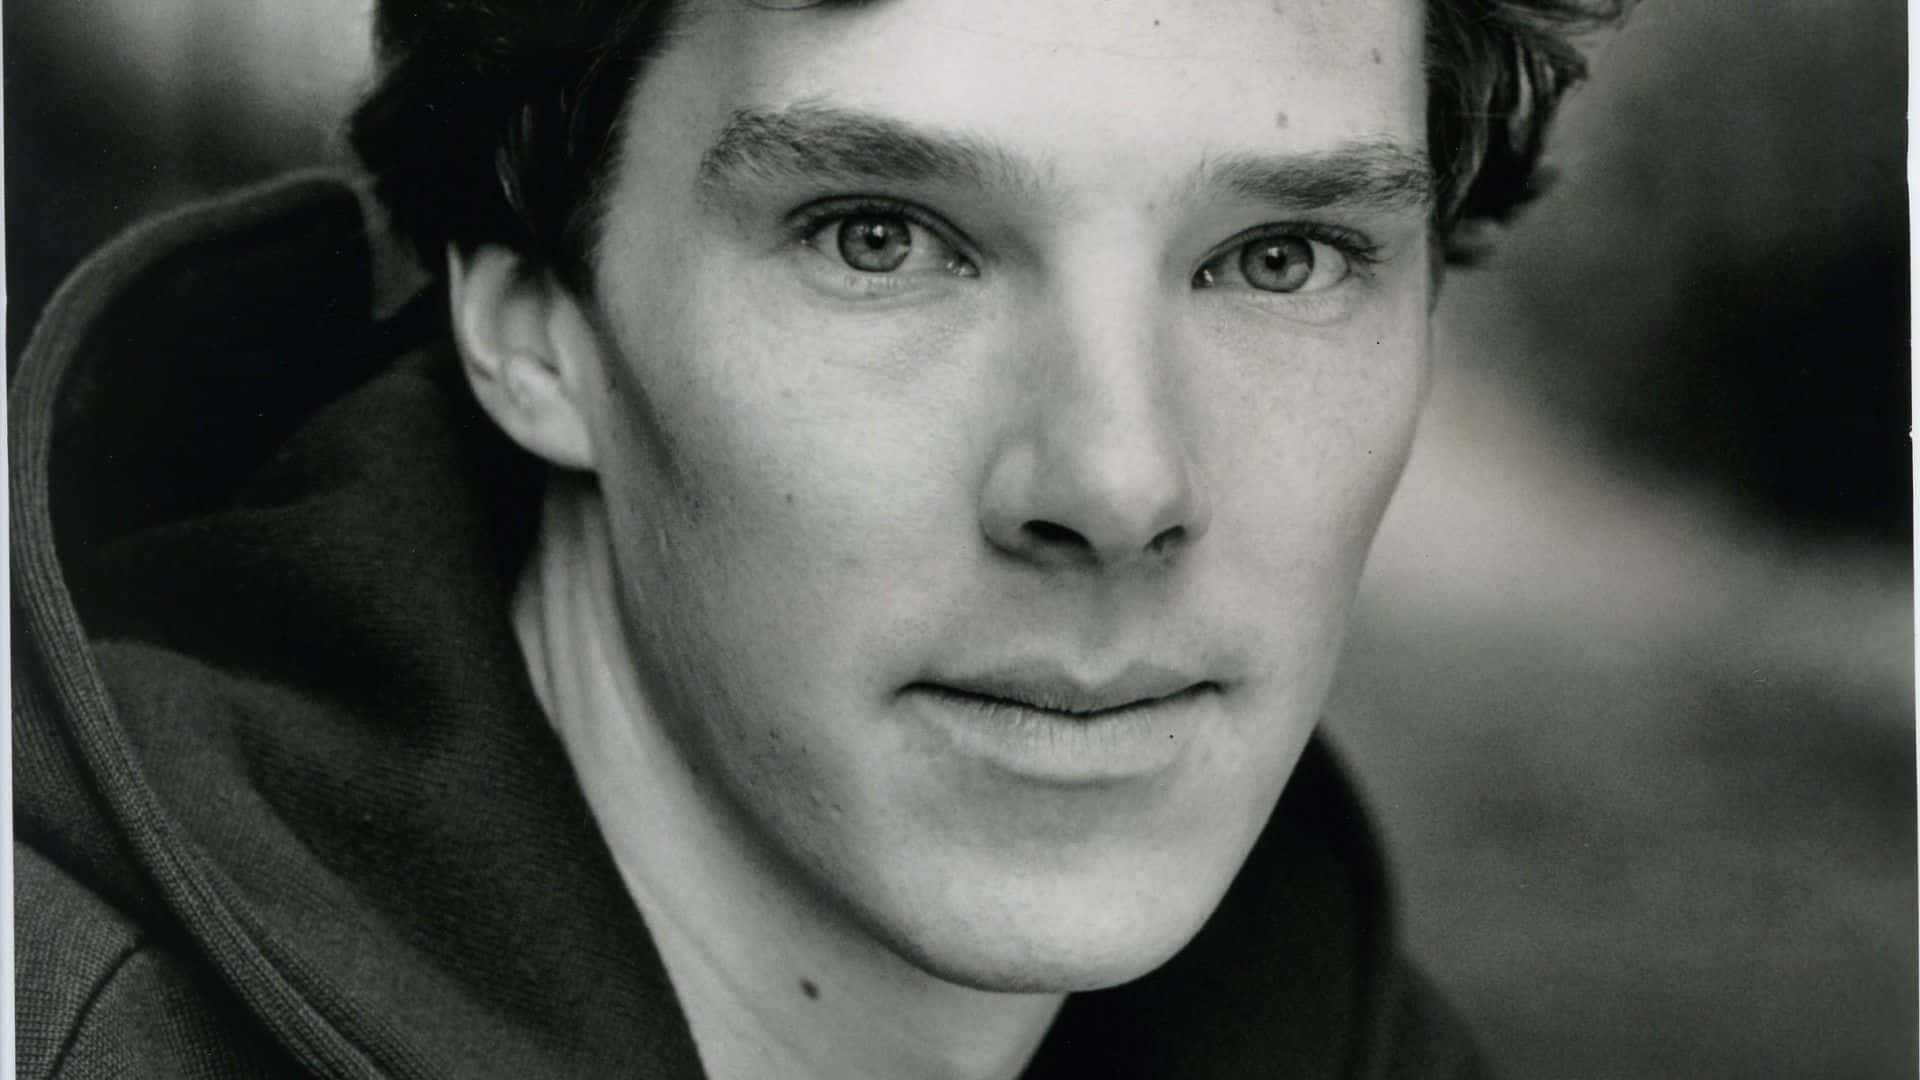 Benedict Cumberbatch Background